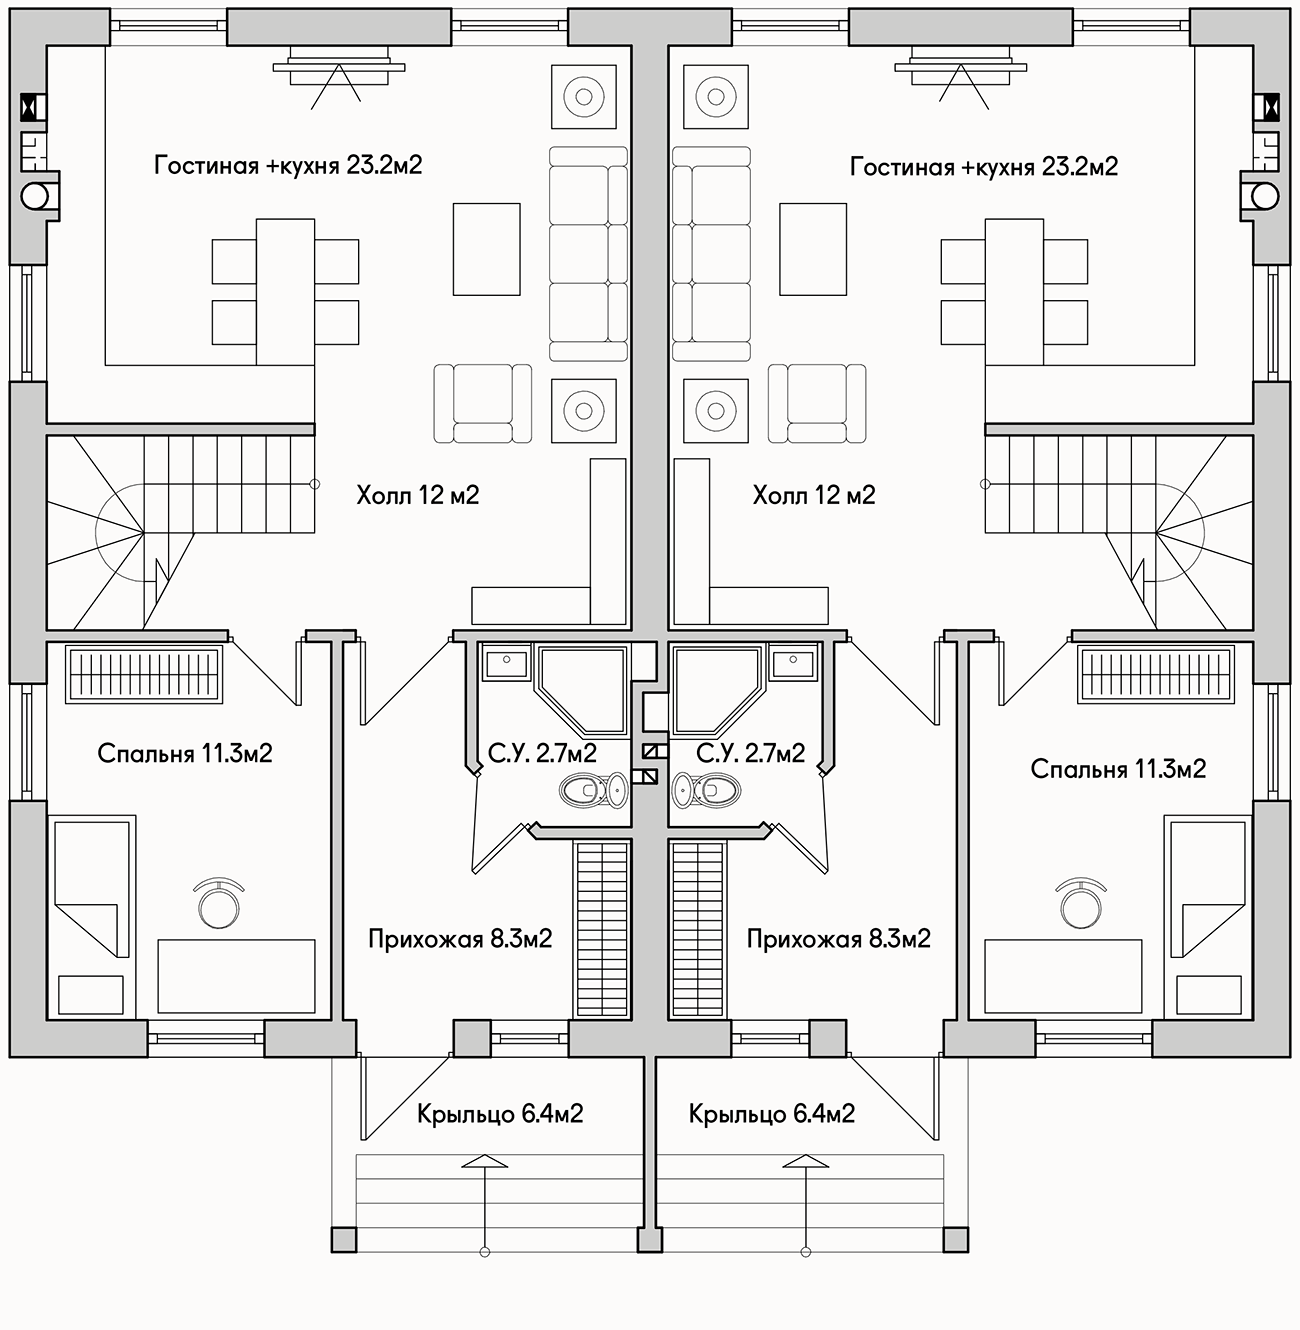 Планирока 1-го этажа в проекте Дуплекс эконом класса TP-122